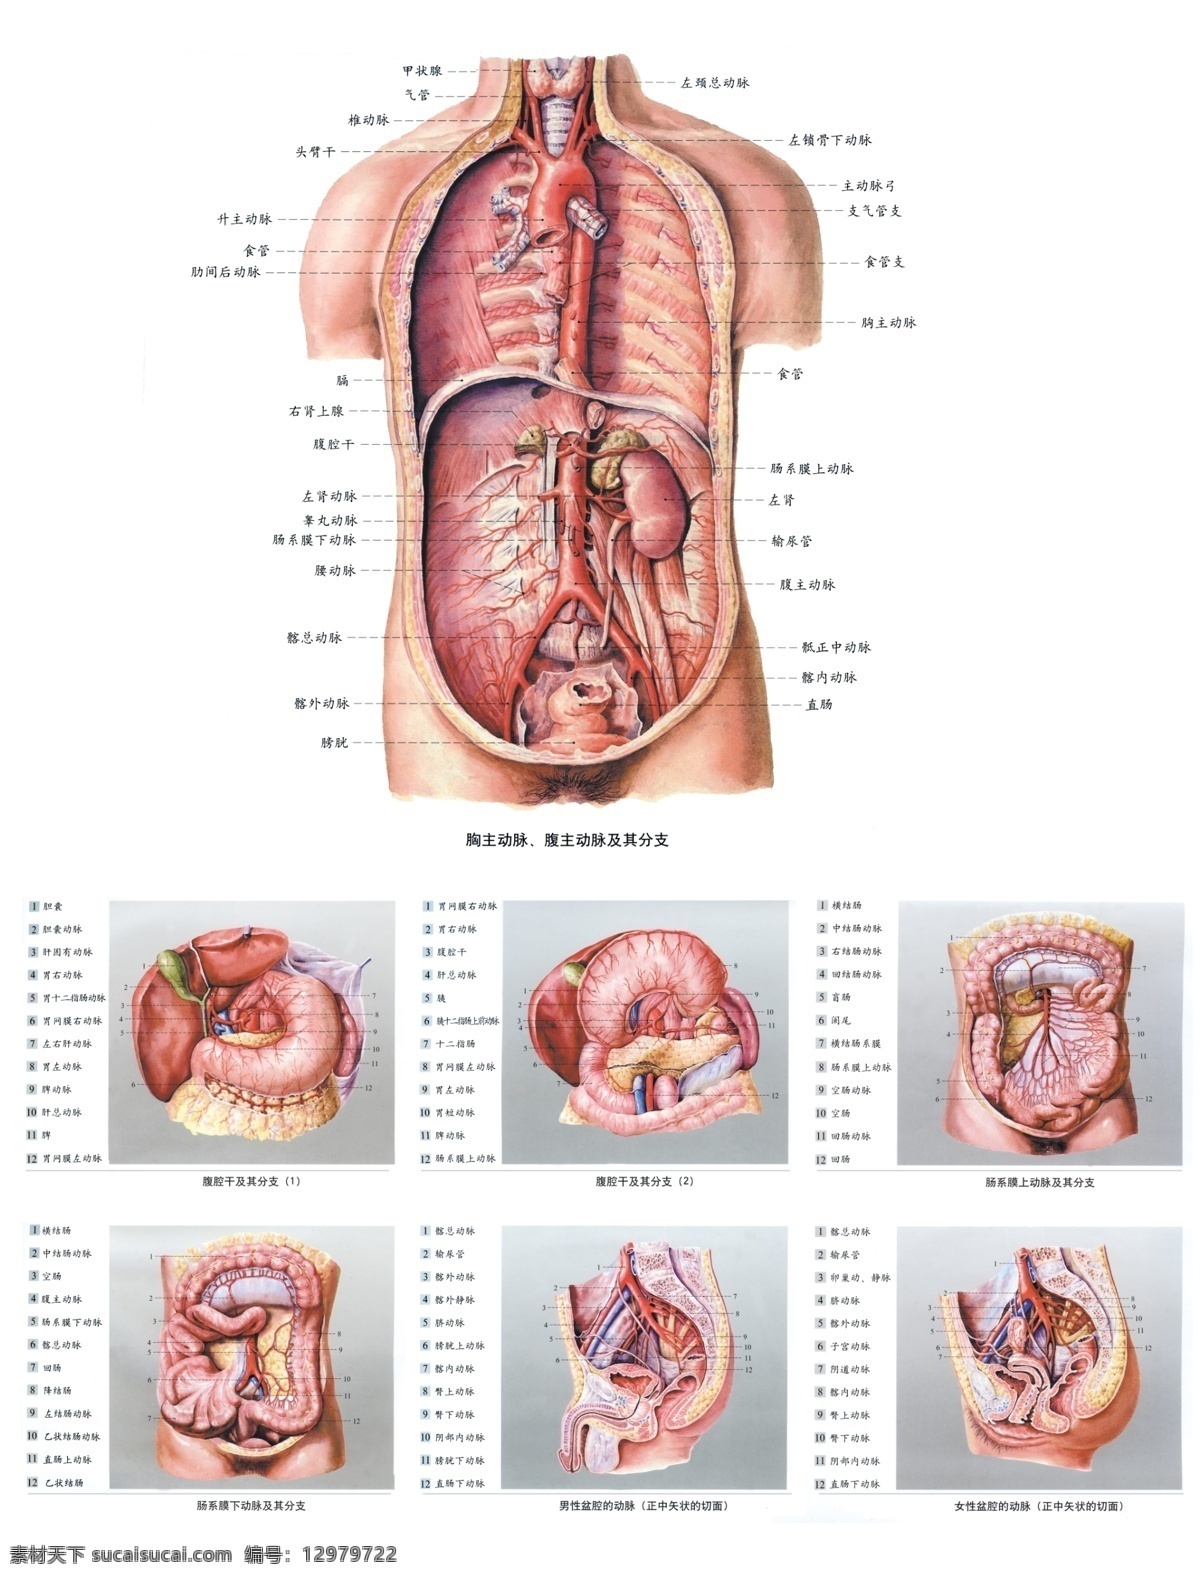 人体 解剖 经络图 人体内脏图 内脏分部图 人体构造图 医学图 展板 医院展板设计